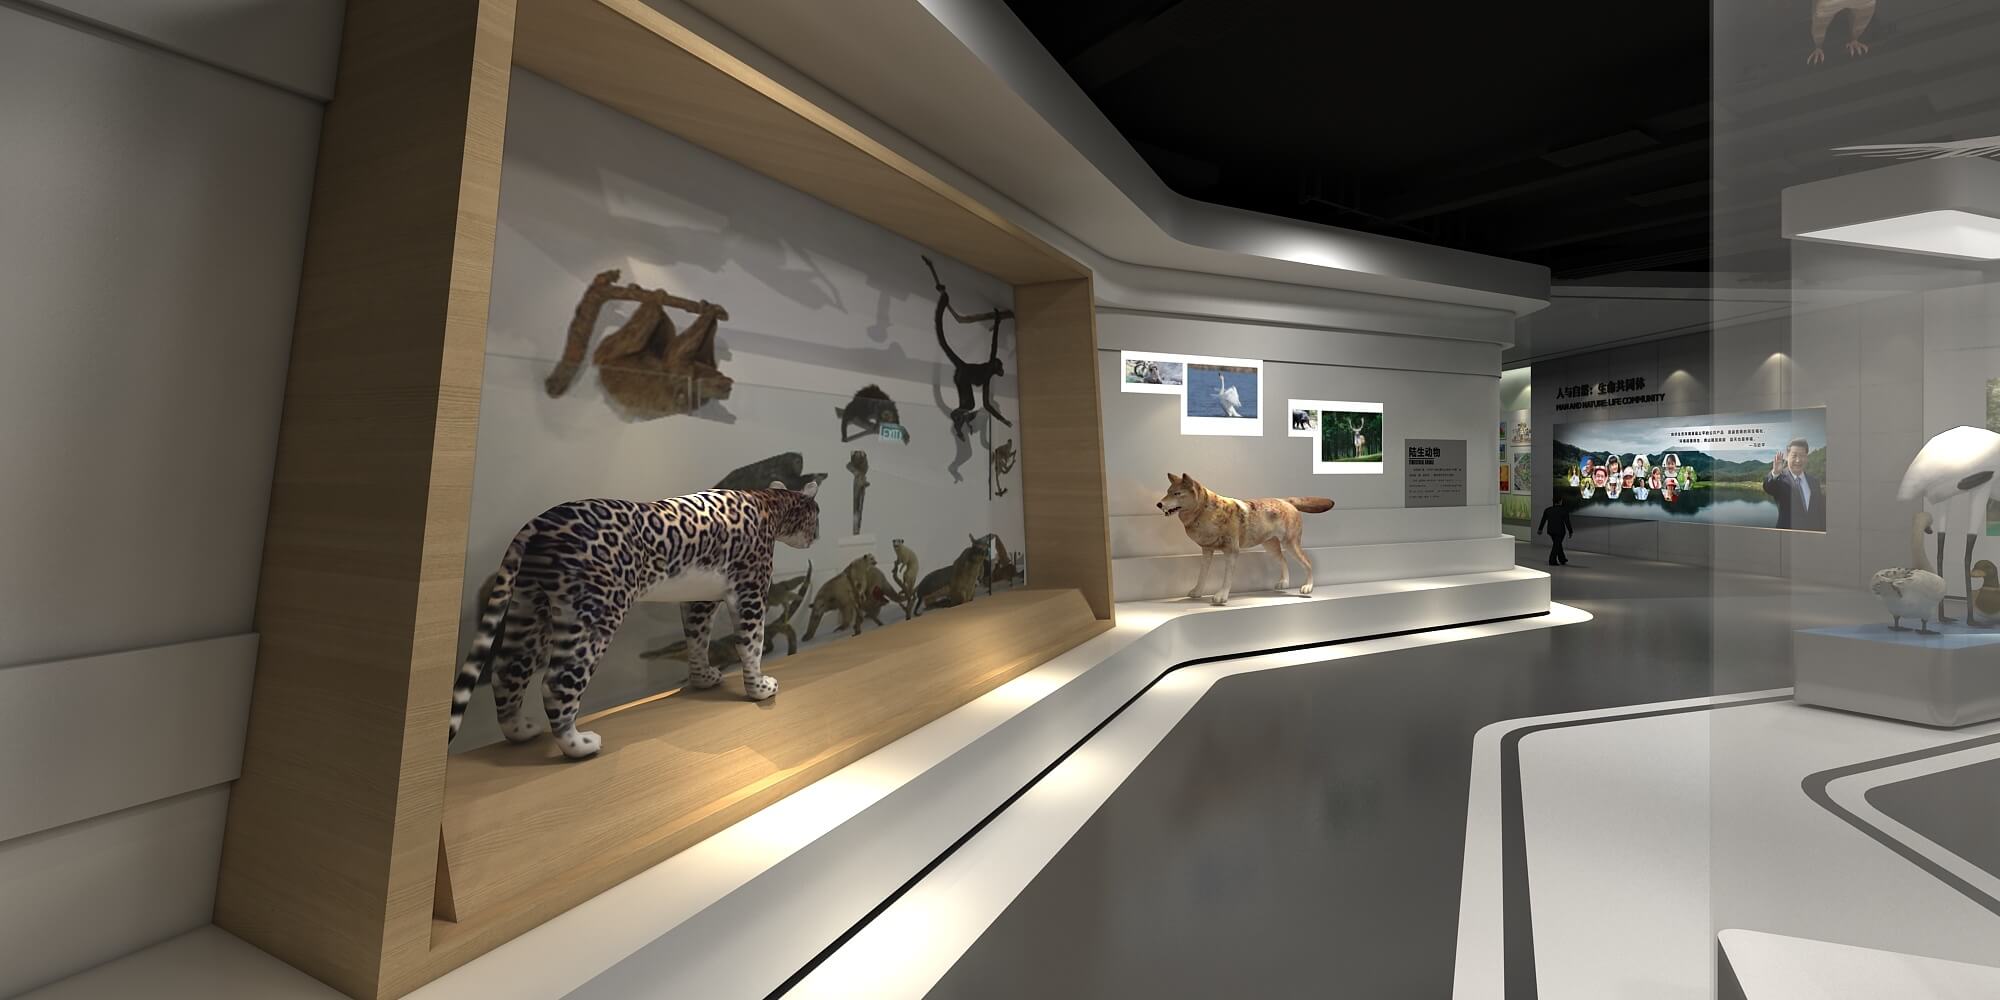 这是一个现代风格的展览空间，展示了多个动物模型和墙上的信息图板，整体显得简洁而现代。